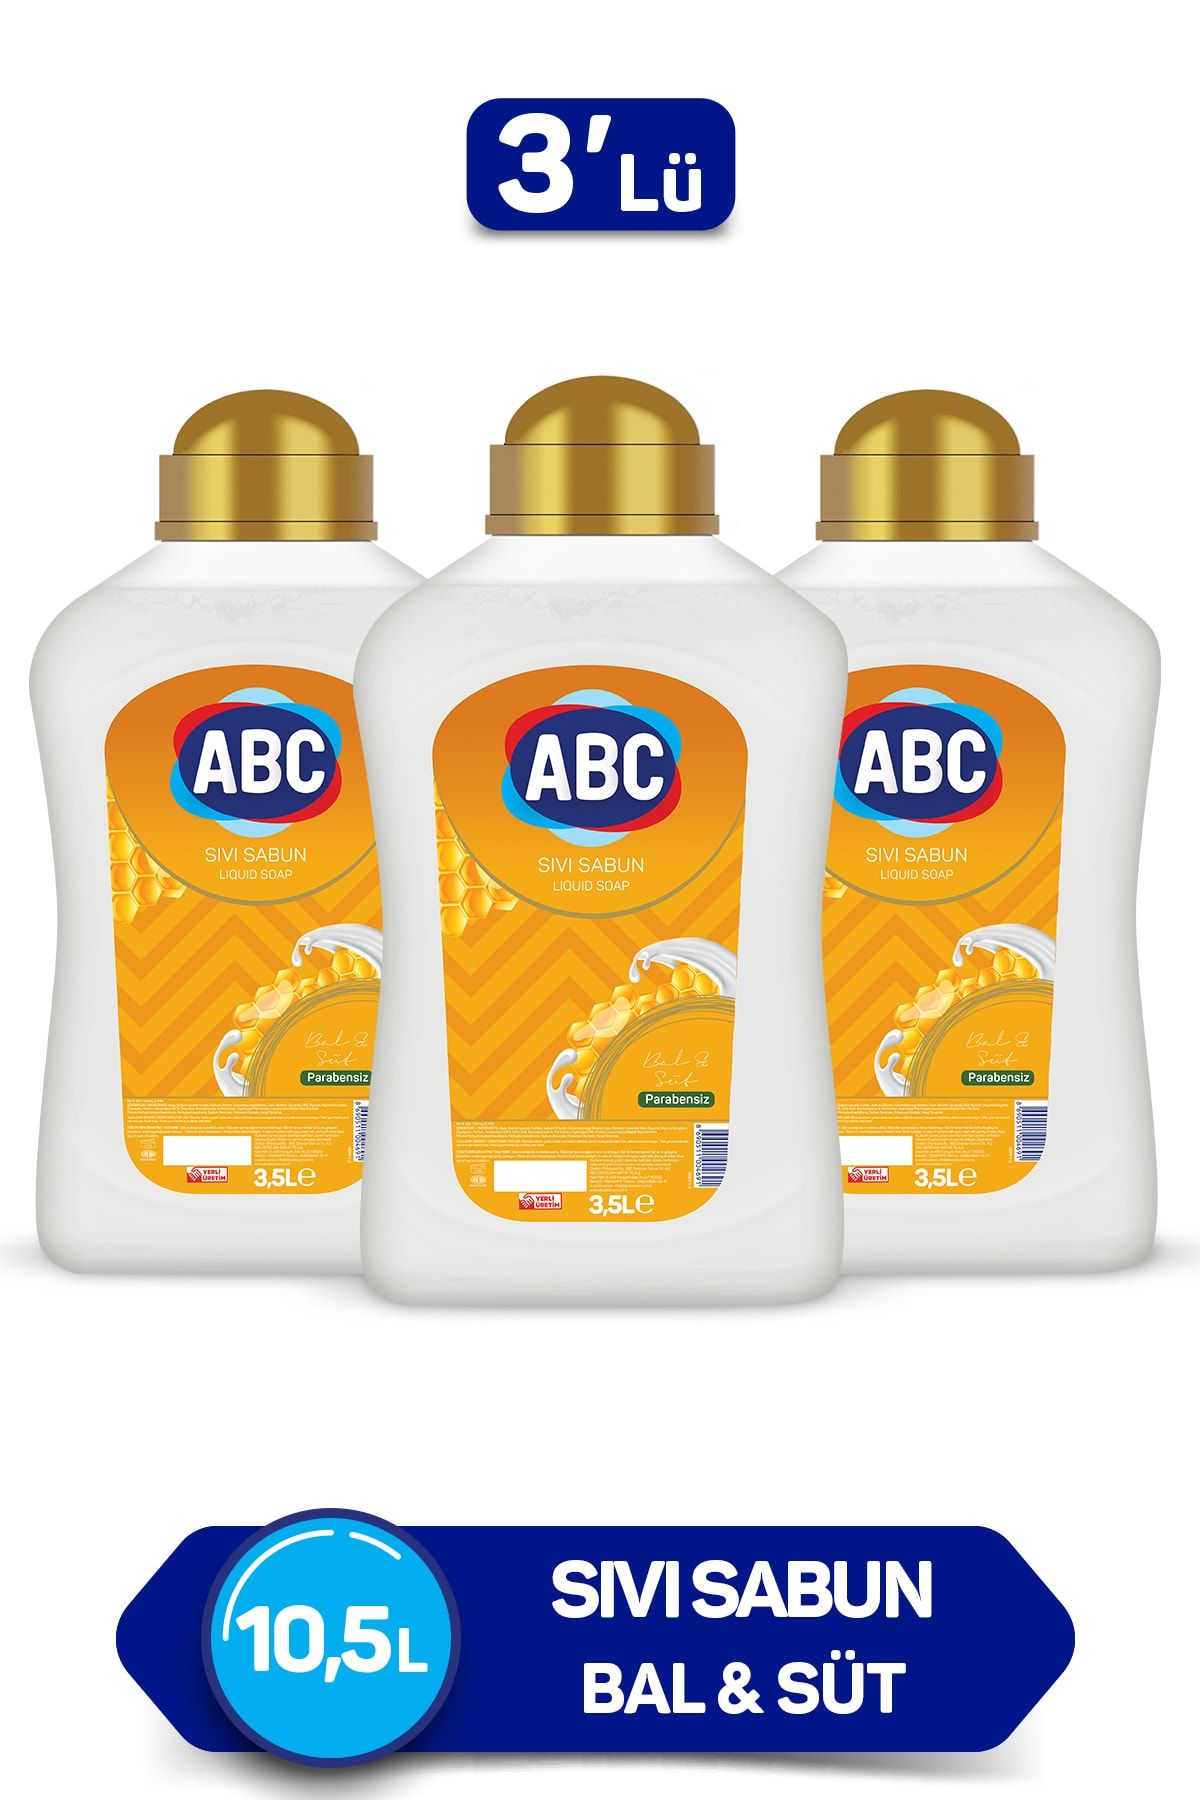 ABC Sıvı Sabun Bal & Süt 3500 ml x 3 Adet